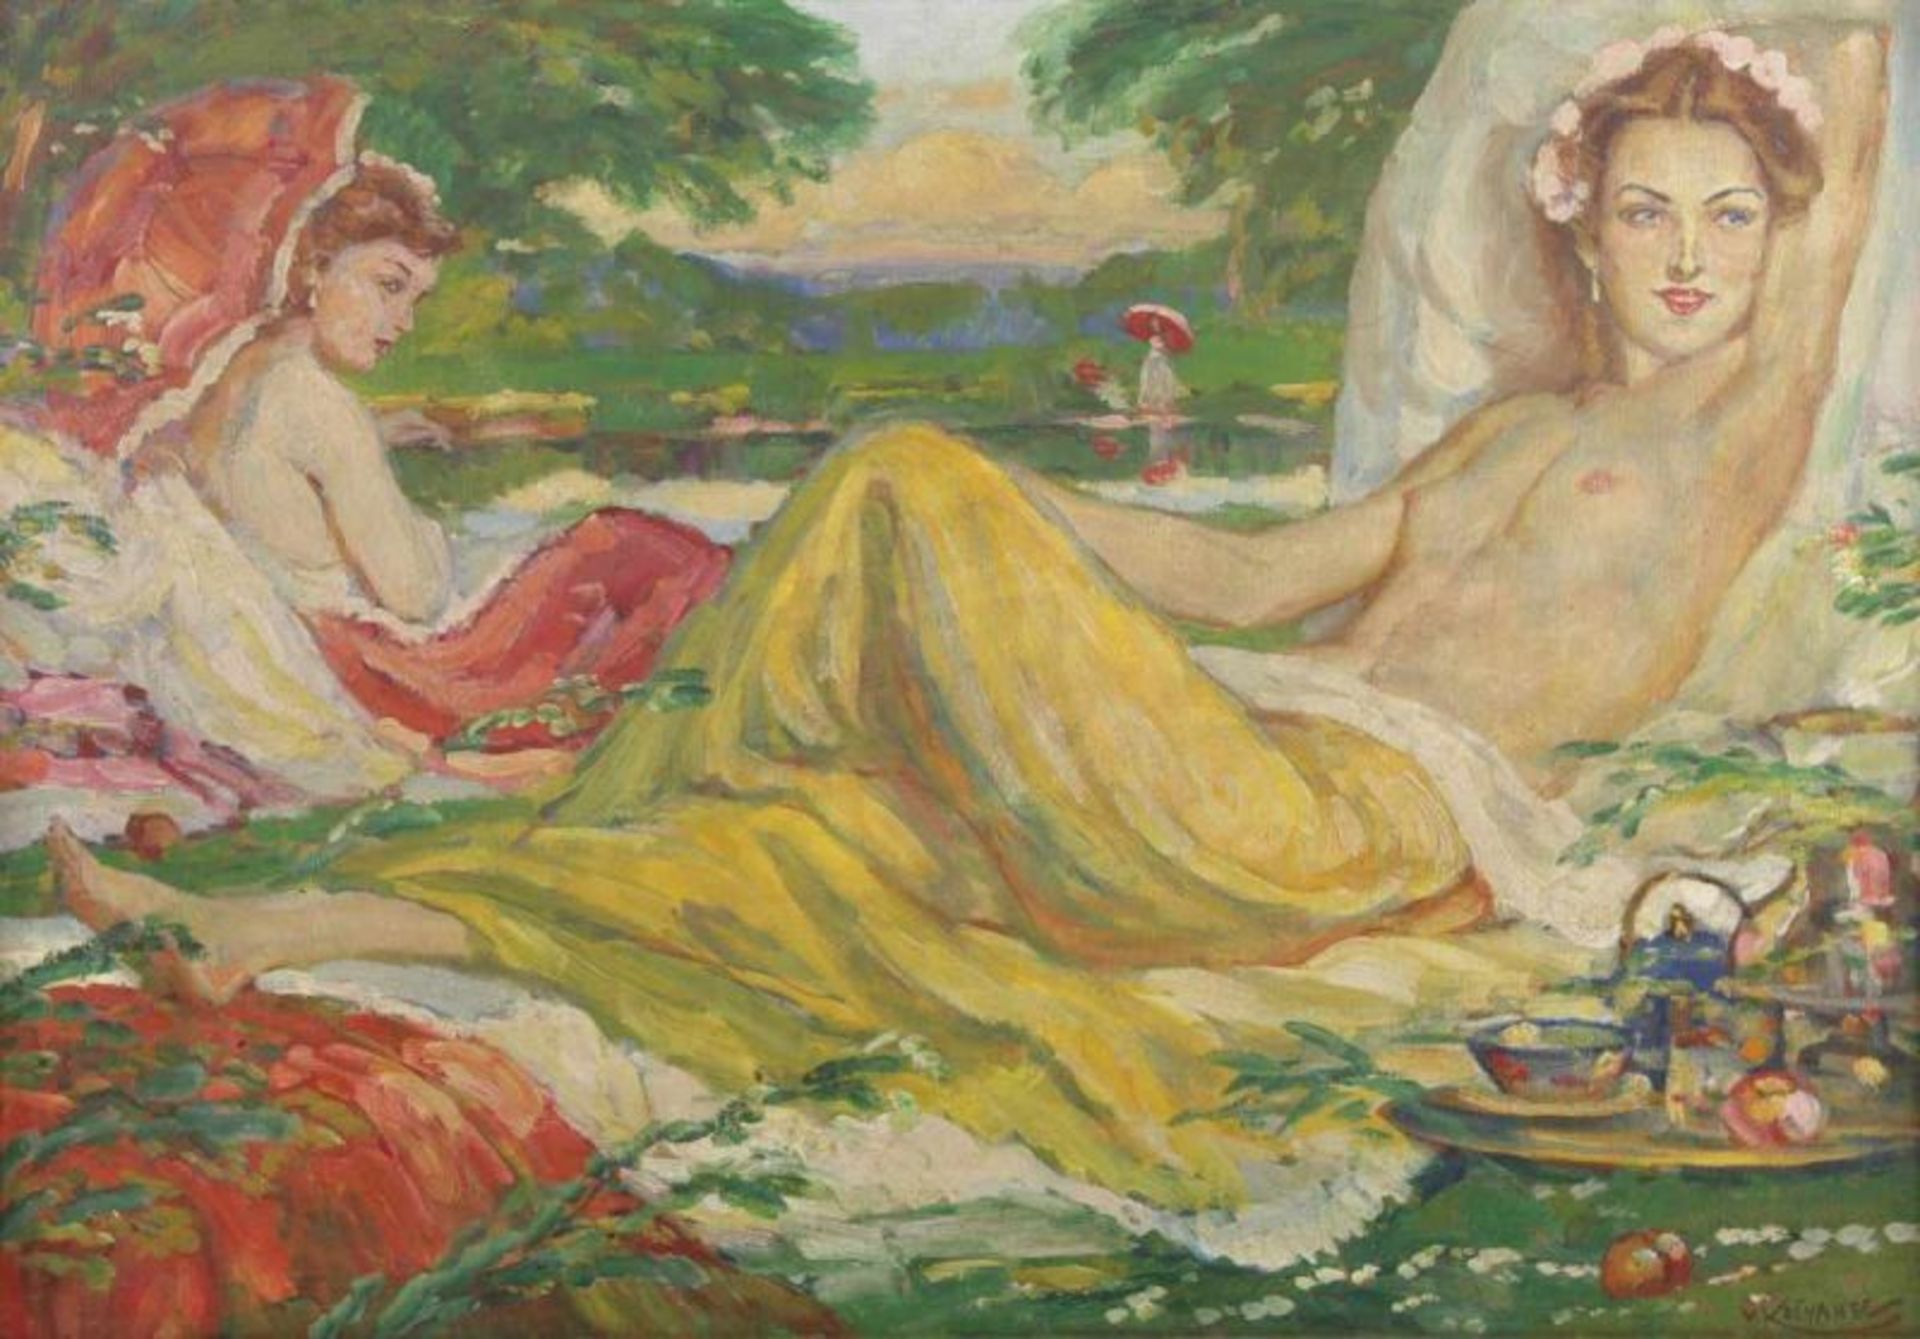 KOSVANEC, Vlastimil (1887-1961), "Zwei Frauen in einer Parklandschaft", Öl/Lwd., 70 x 100, unten